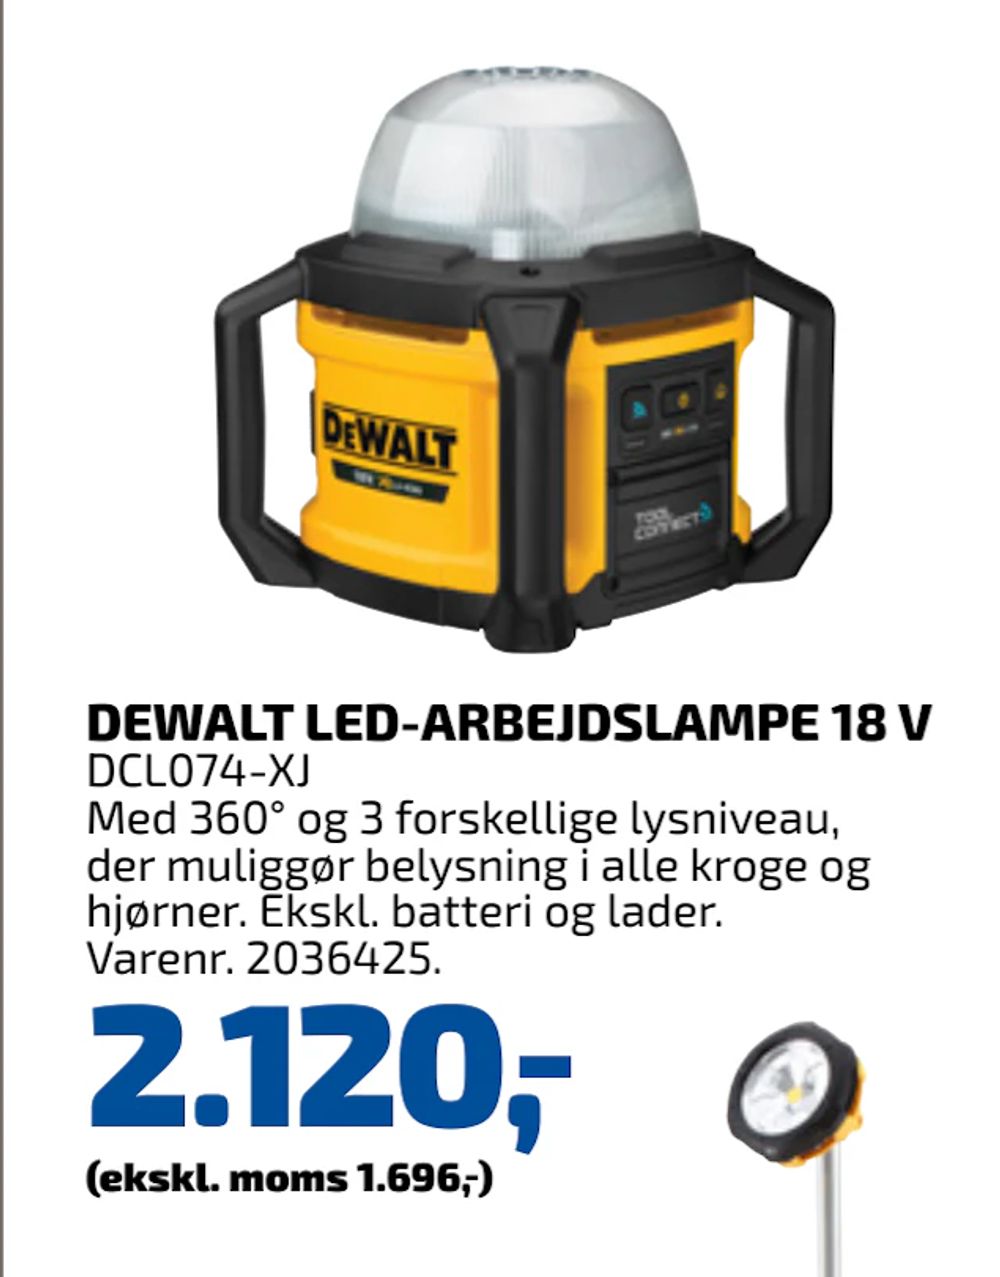 Tilbud på DEWALT LED-ARBEJDSLAMPE 18 V fra Davidsen til 2.120 kr.